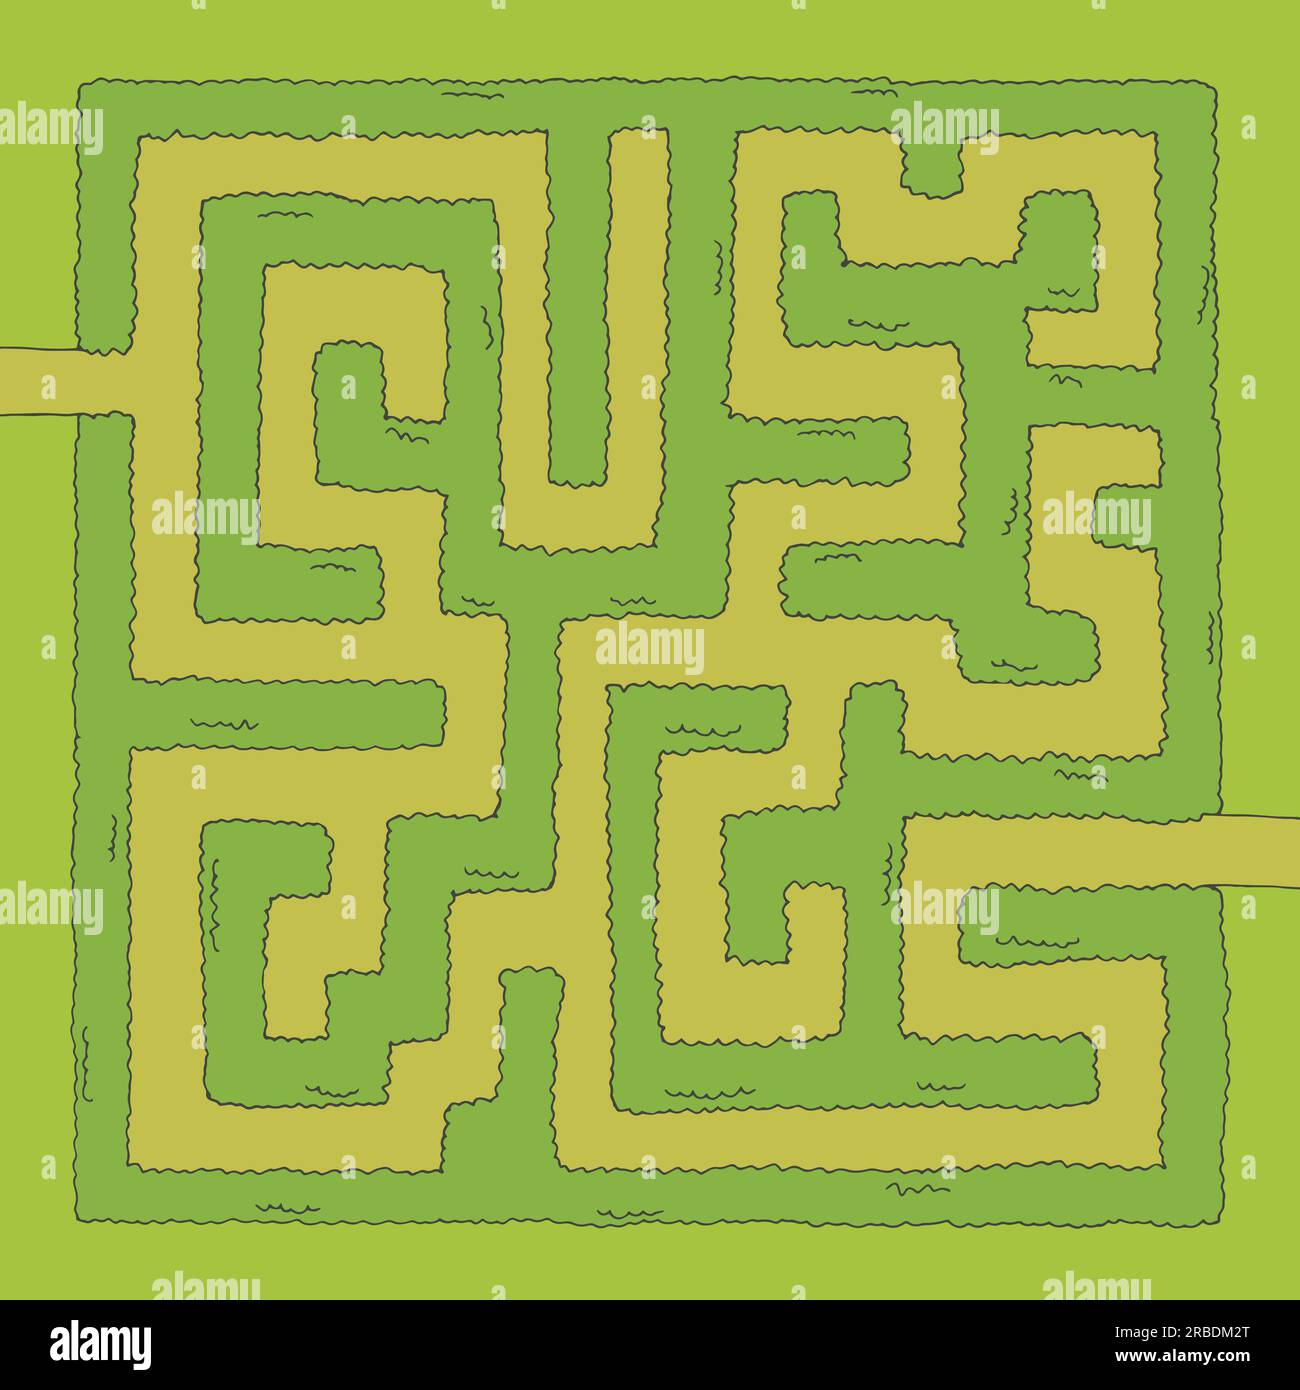 Jardin labyrinthe Bush couleur graphique esquisse vue aérienne supérieure illustration vecteur Illustration de Vecteur